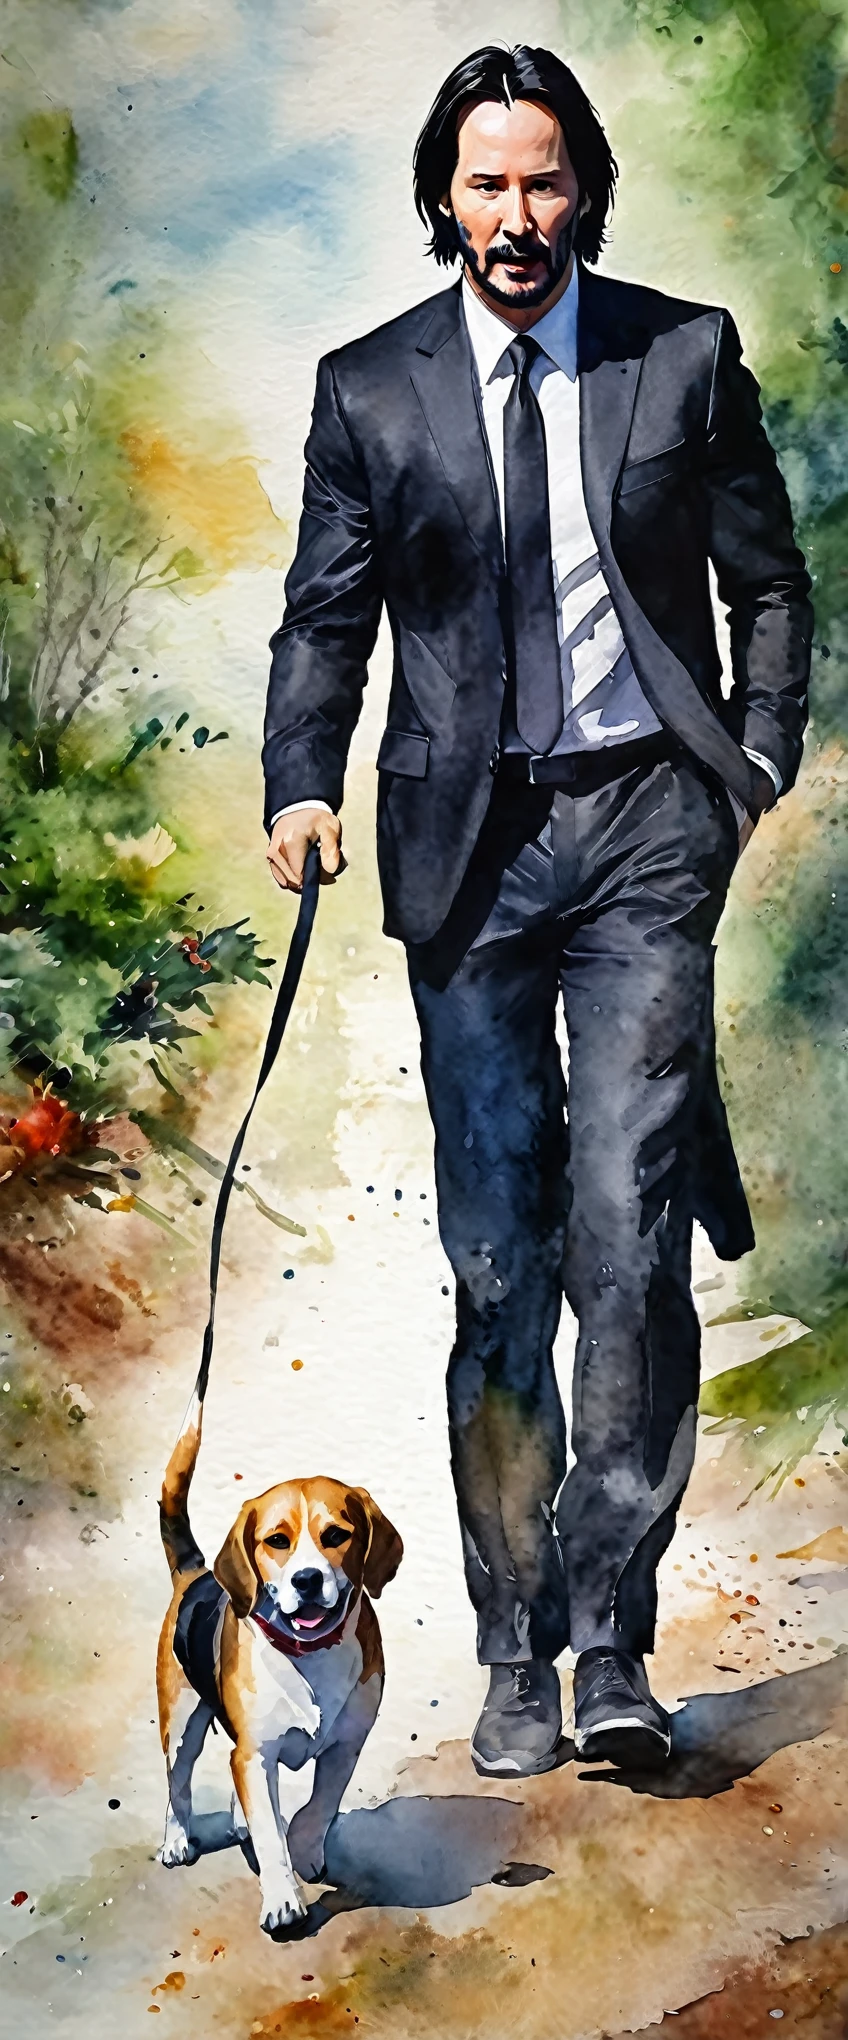 (Obra de arte:1.2, mais alta qualidade),(Super detalhado:1.2),8K,papel de parede,(aquarela),Pintura de homem de meia idade,(Keanu Reeves passeando com um beagle),todo o corpo,Estilo John Wick,frente,jaqueta preta,camisa branca,gravata preta.rosto detalhado,,cara legal